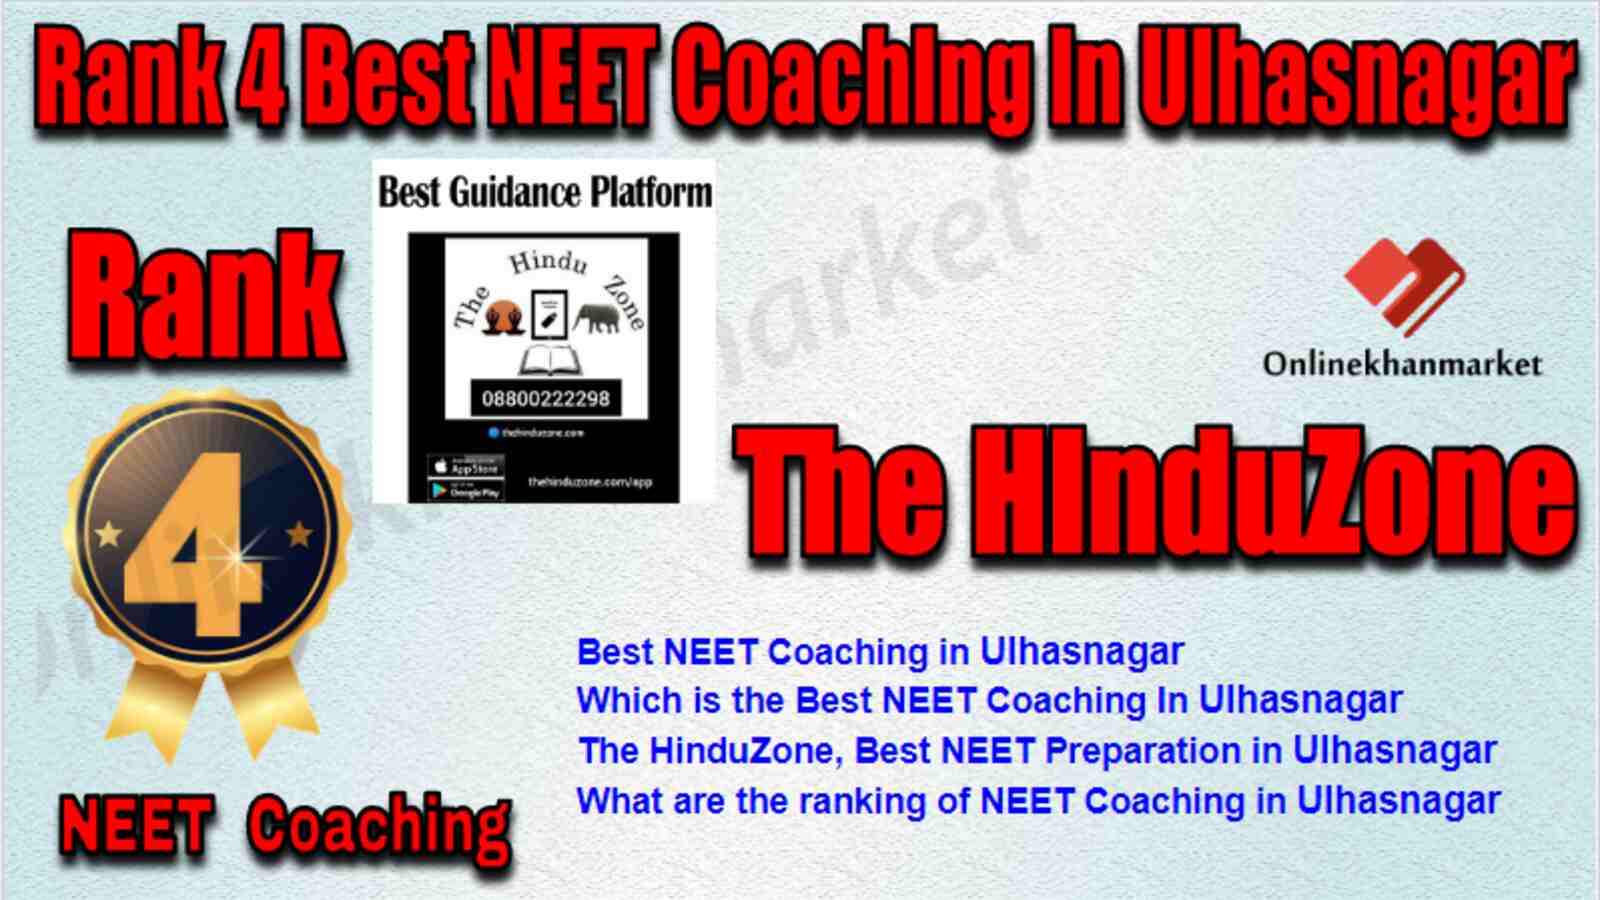 Rank 4 Best NEET Coaching in Ulhasnagar